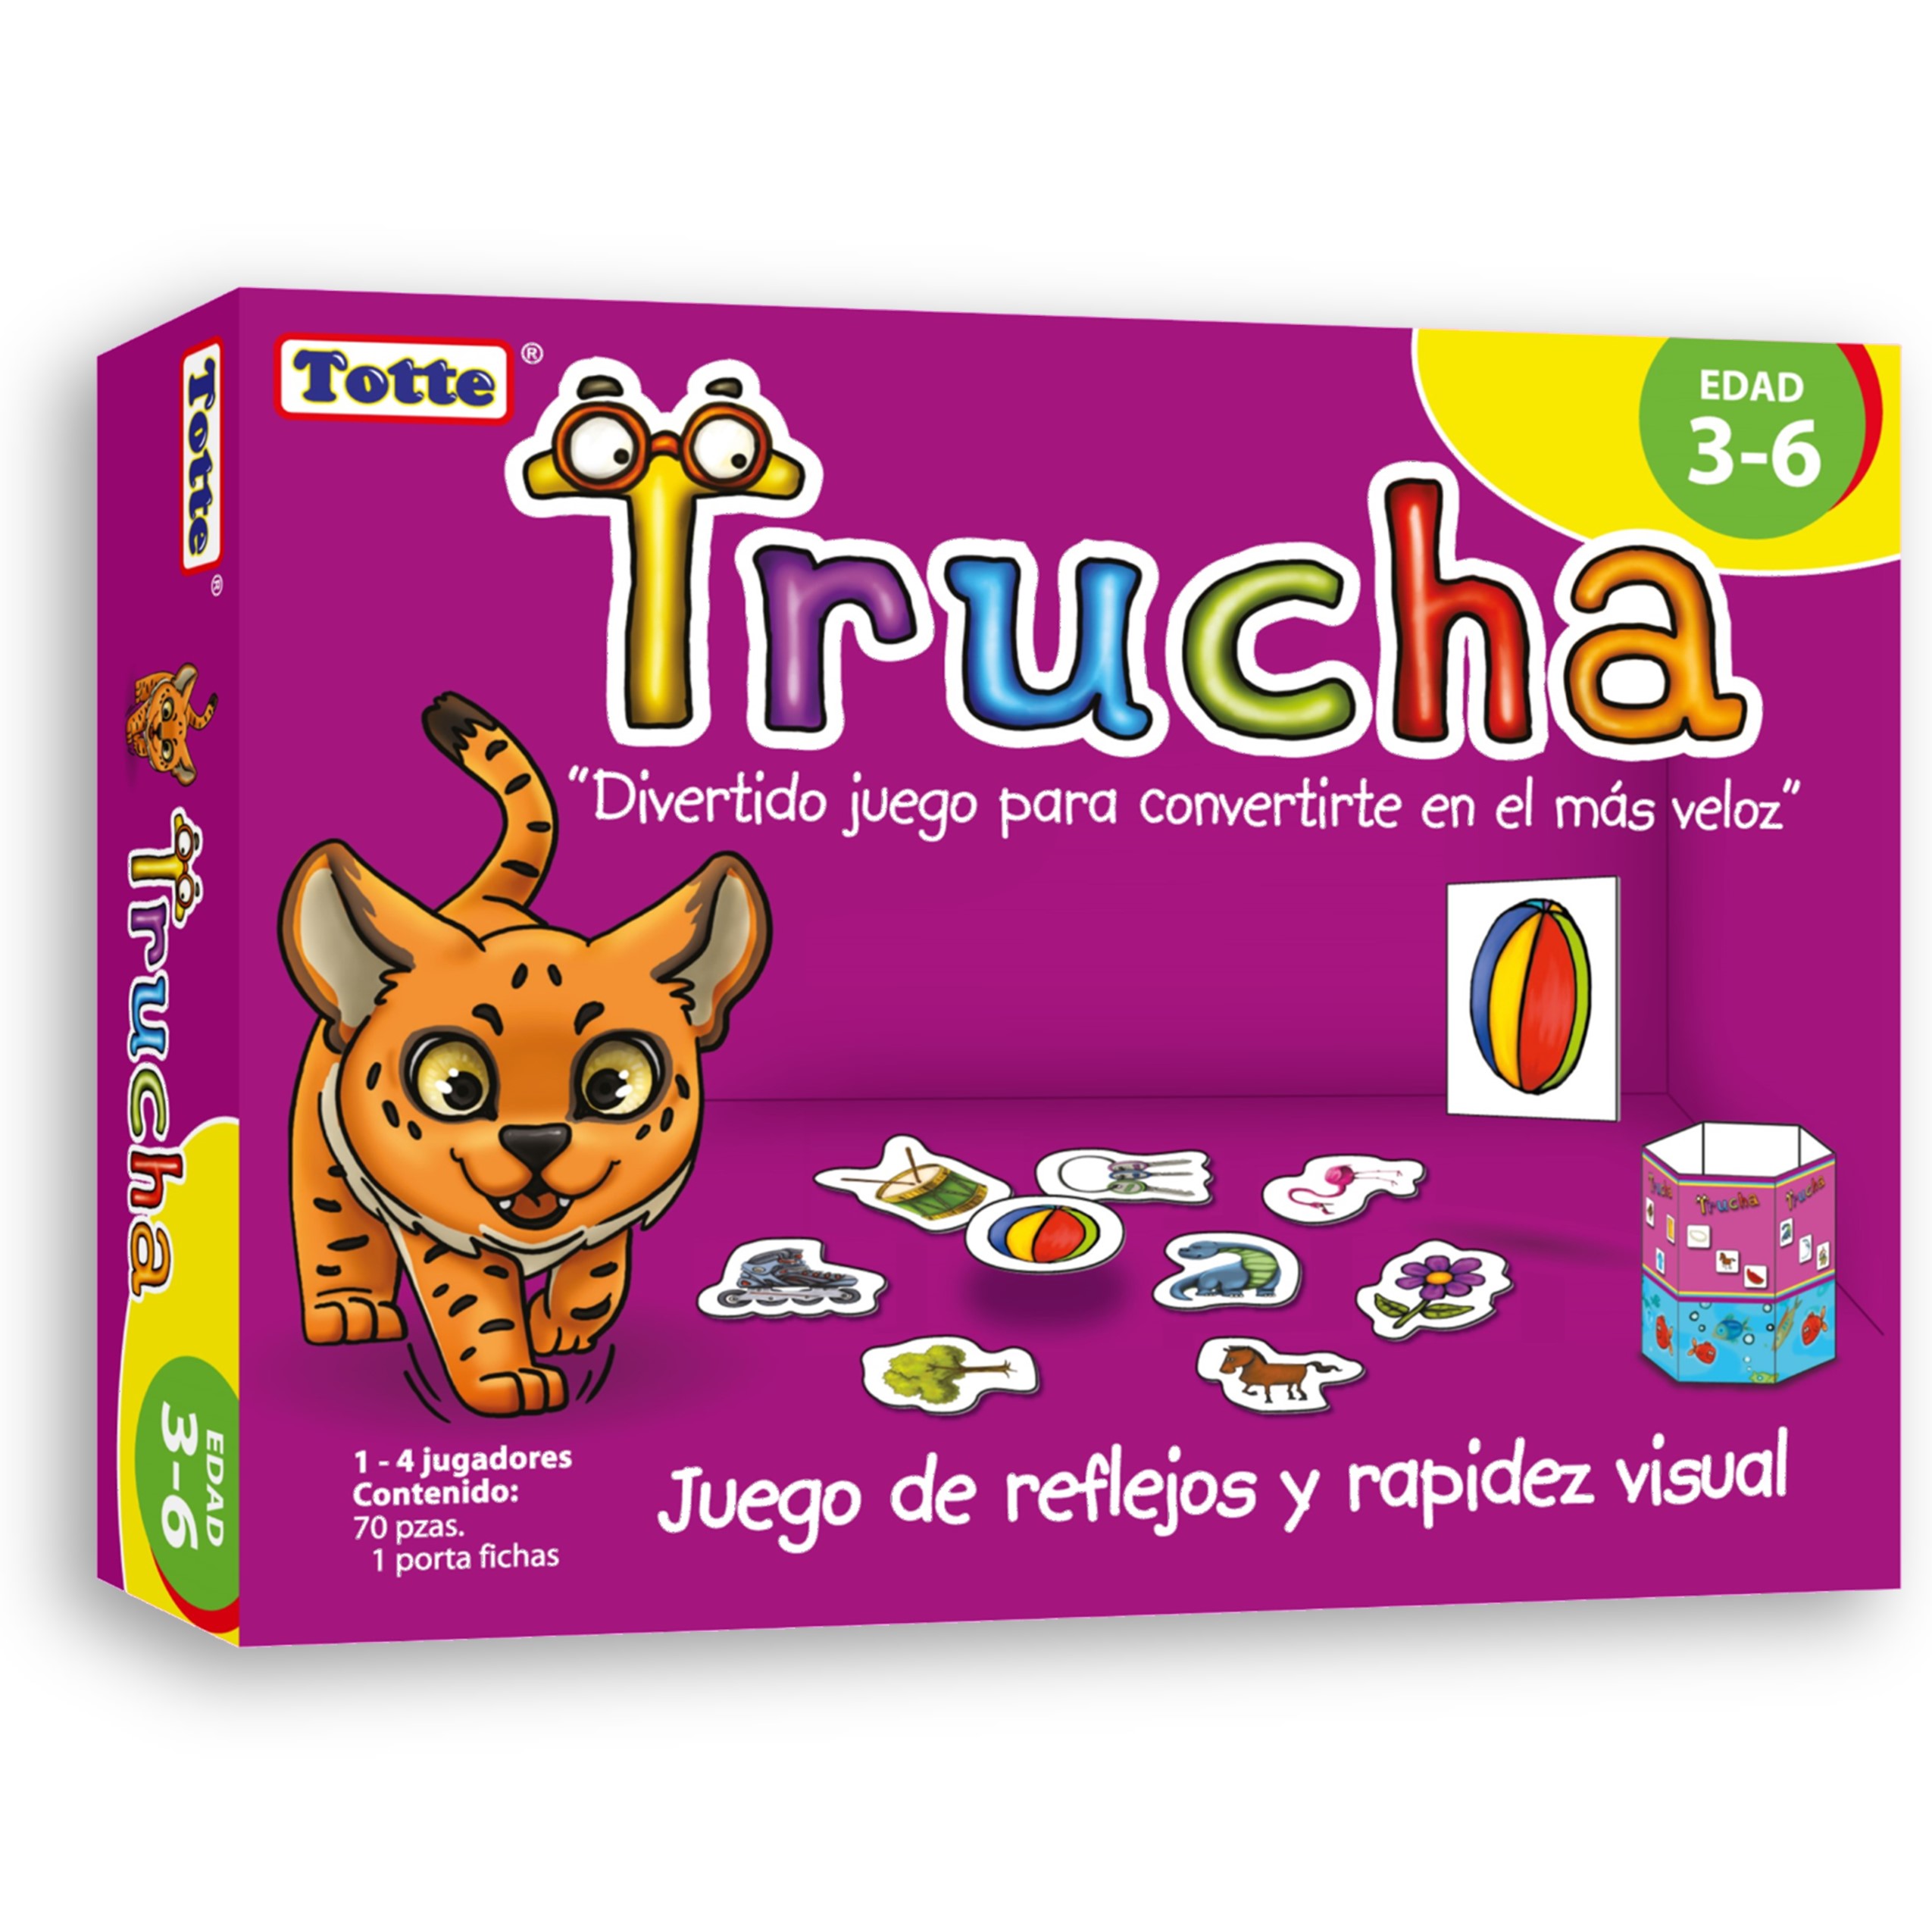 T150 Trucha